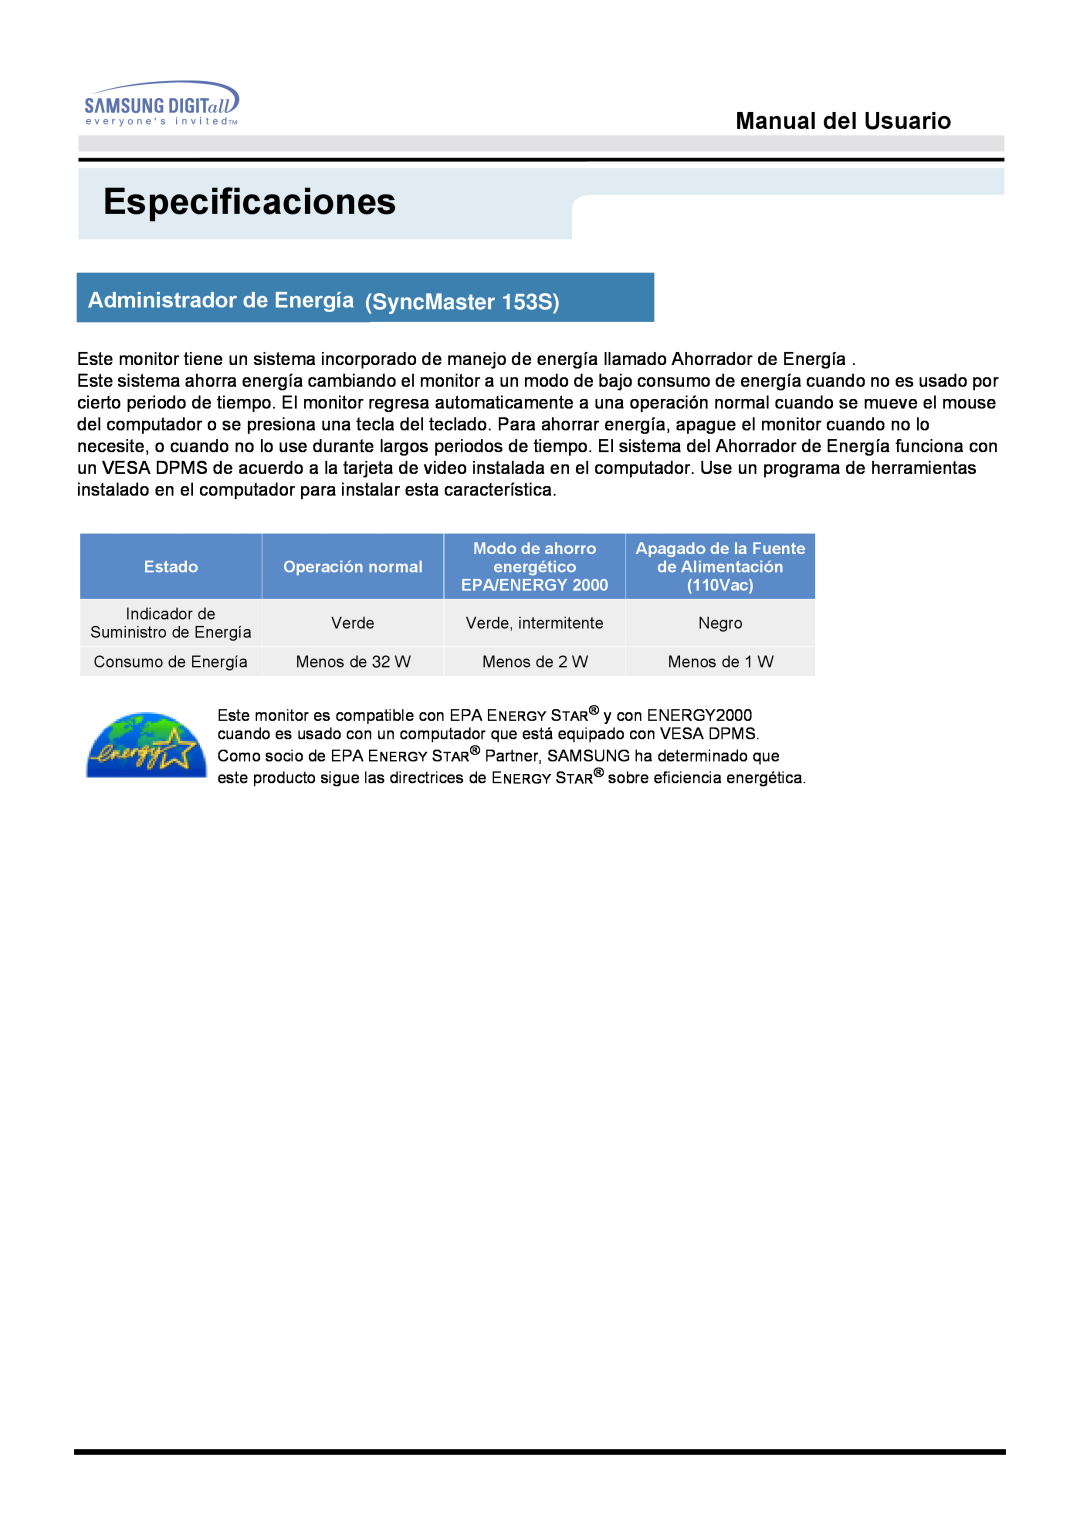 Samsung manual Administrador de Energía SyncMaster 153S, Especificaciones, Manual del Usuario, Modo de ahorro, Estado 